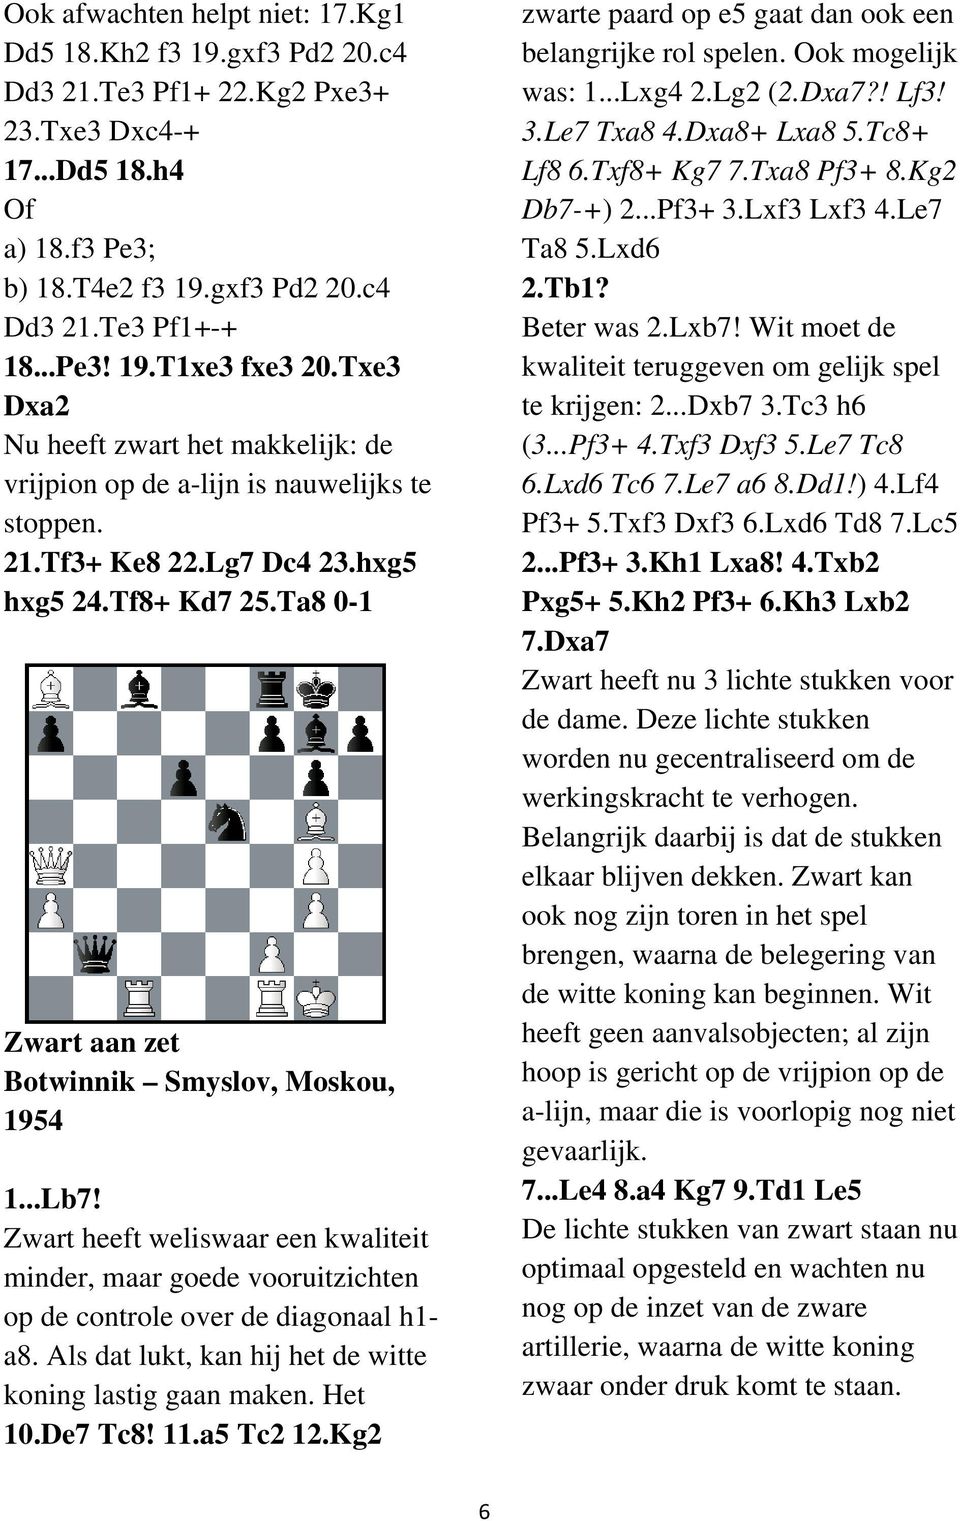 ..Lb7! Zwart heeft weliswaar een kwaliteit minder, maar goede vooruitzichten op de controle over de diagonaal h1- a8. Als dat lukt, kan hij het de witte koning lastig gaan maken. Het 10.De7 Tc8! 11.